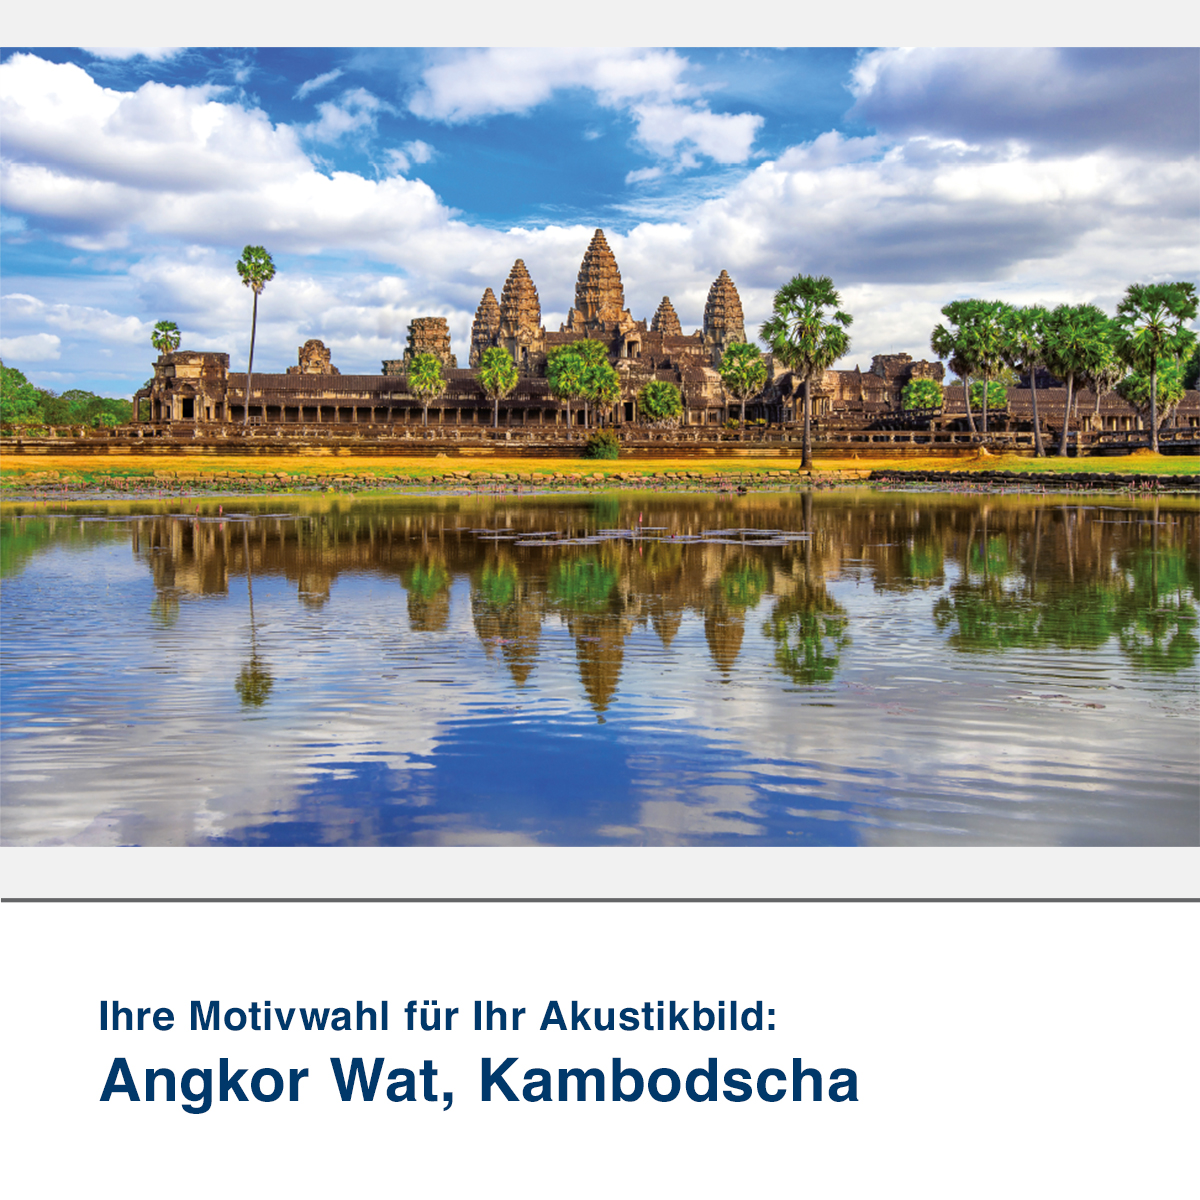 Akustikbild Angkor Wat, Kambodscha